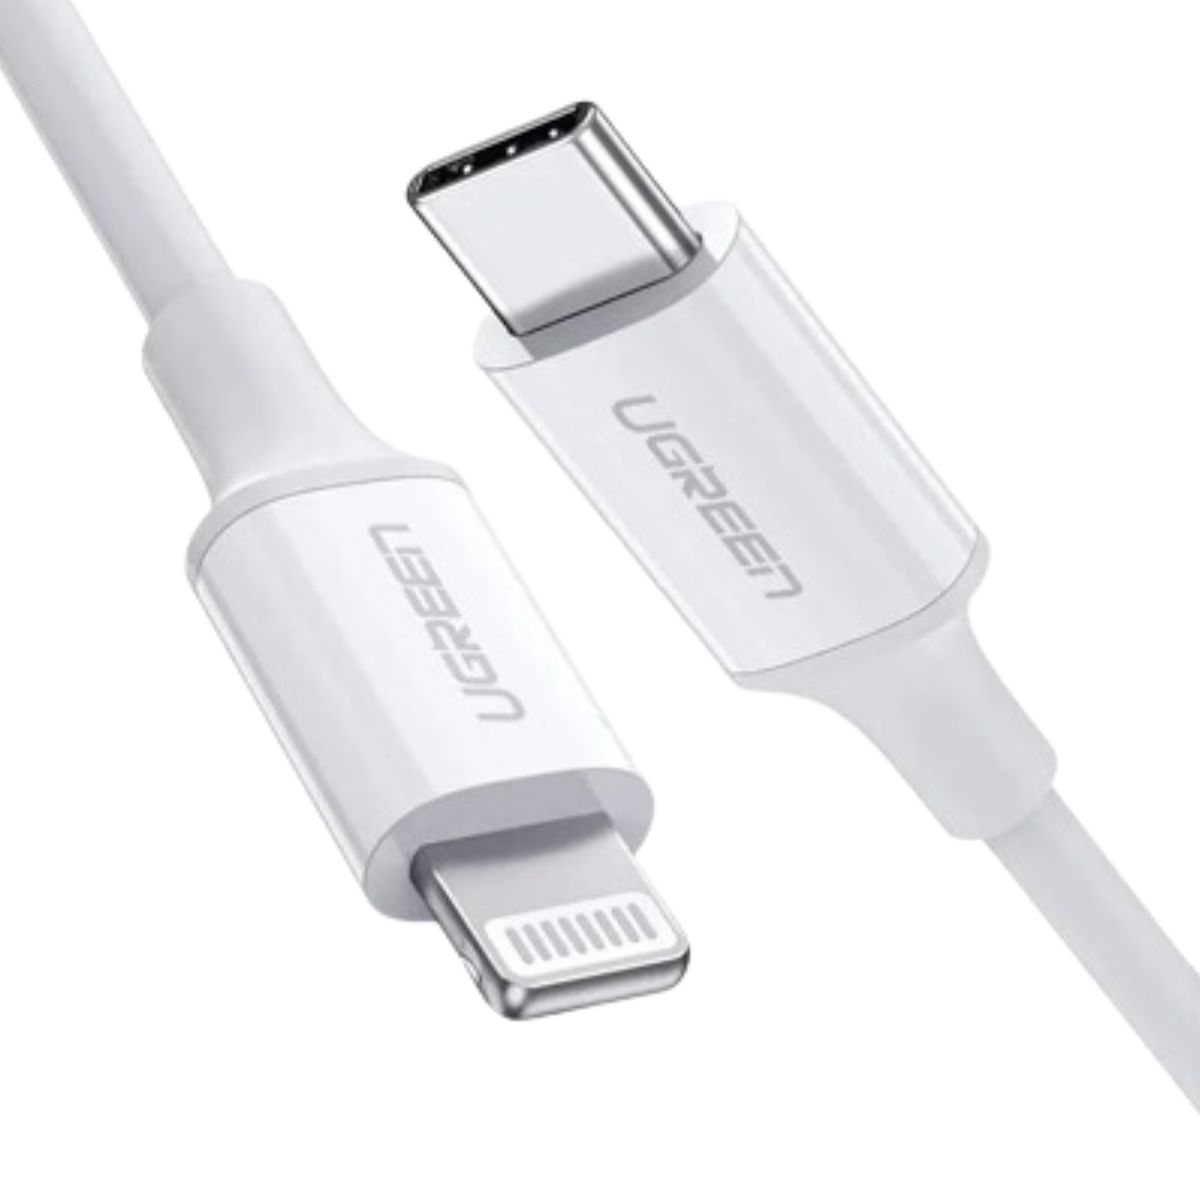 Cáp sạc 50cm USB Lightning Ugreen 60747 US171 màu trắng, tốc độ truyền dữ liệu 480Mbps